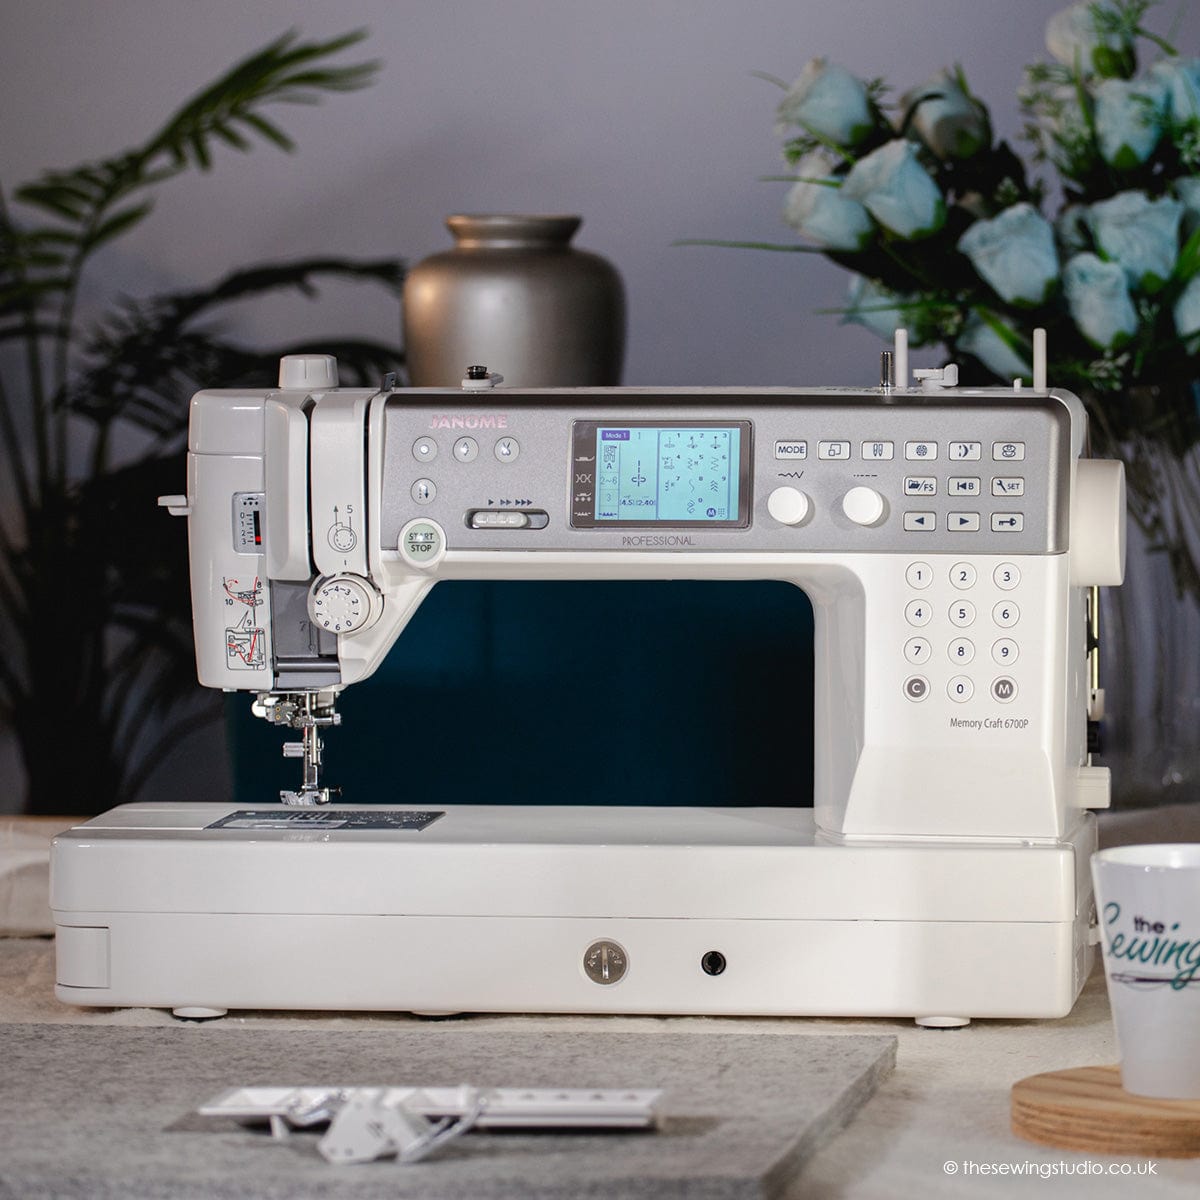 Janome 6700P Sewing Machine